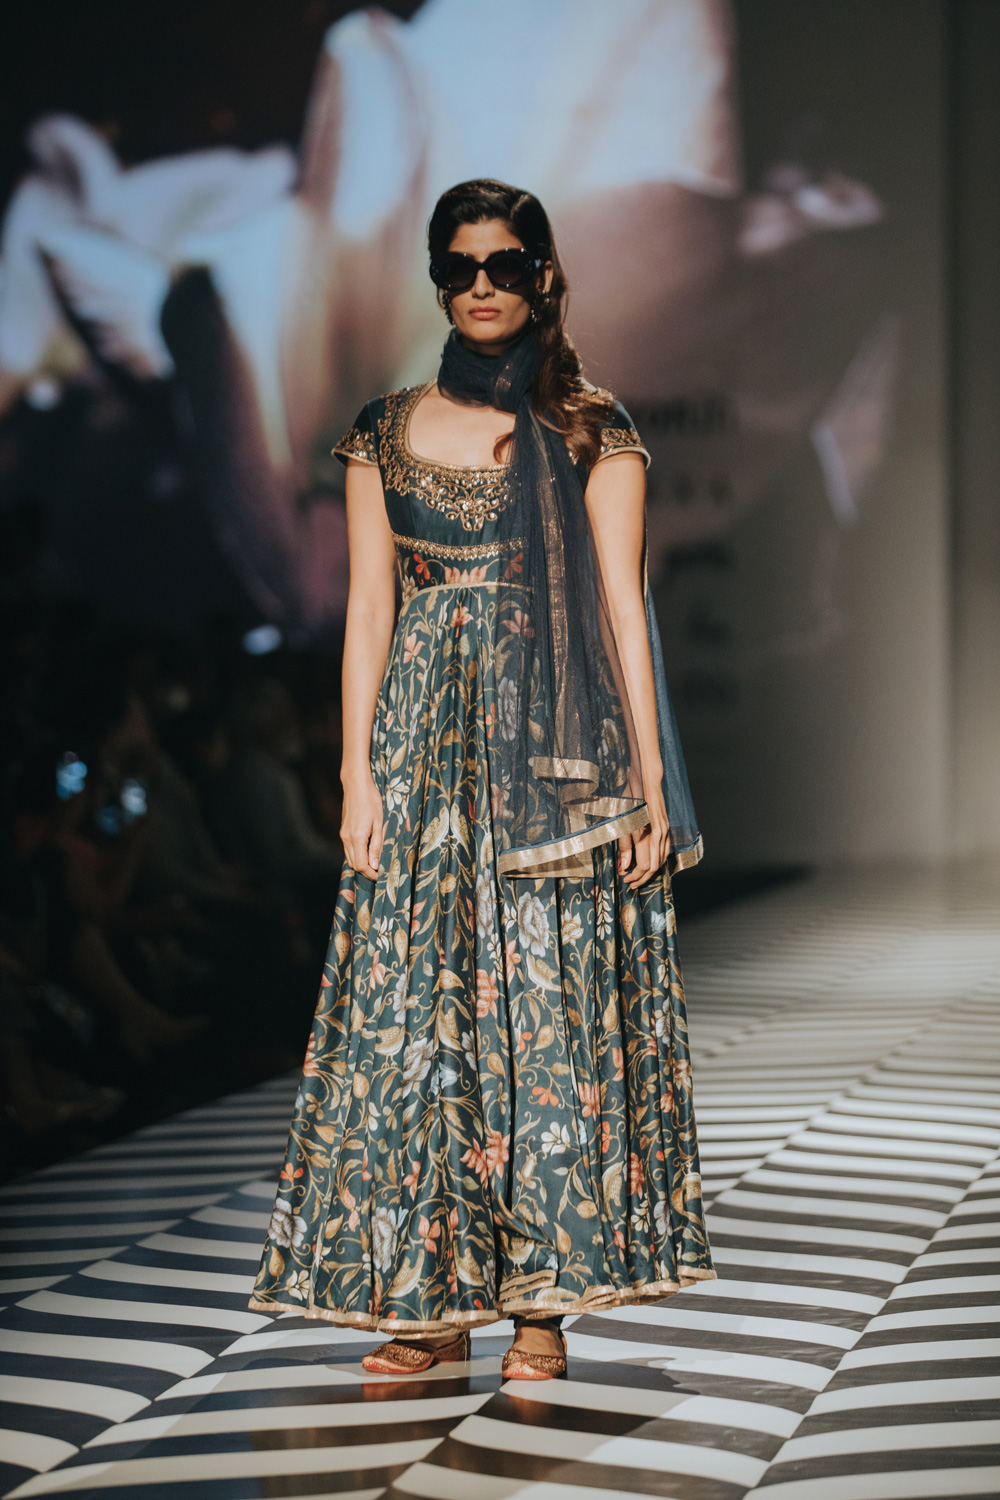 JJ Valaya FDCI Amazon India Fashion Week Spring Summer 2018 Look 2